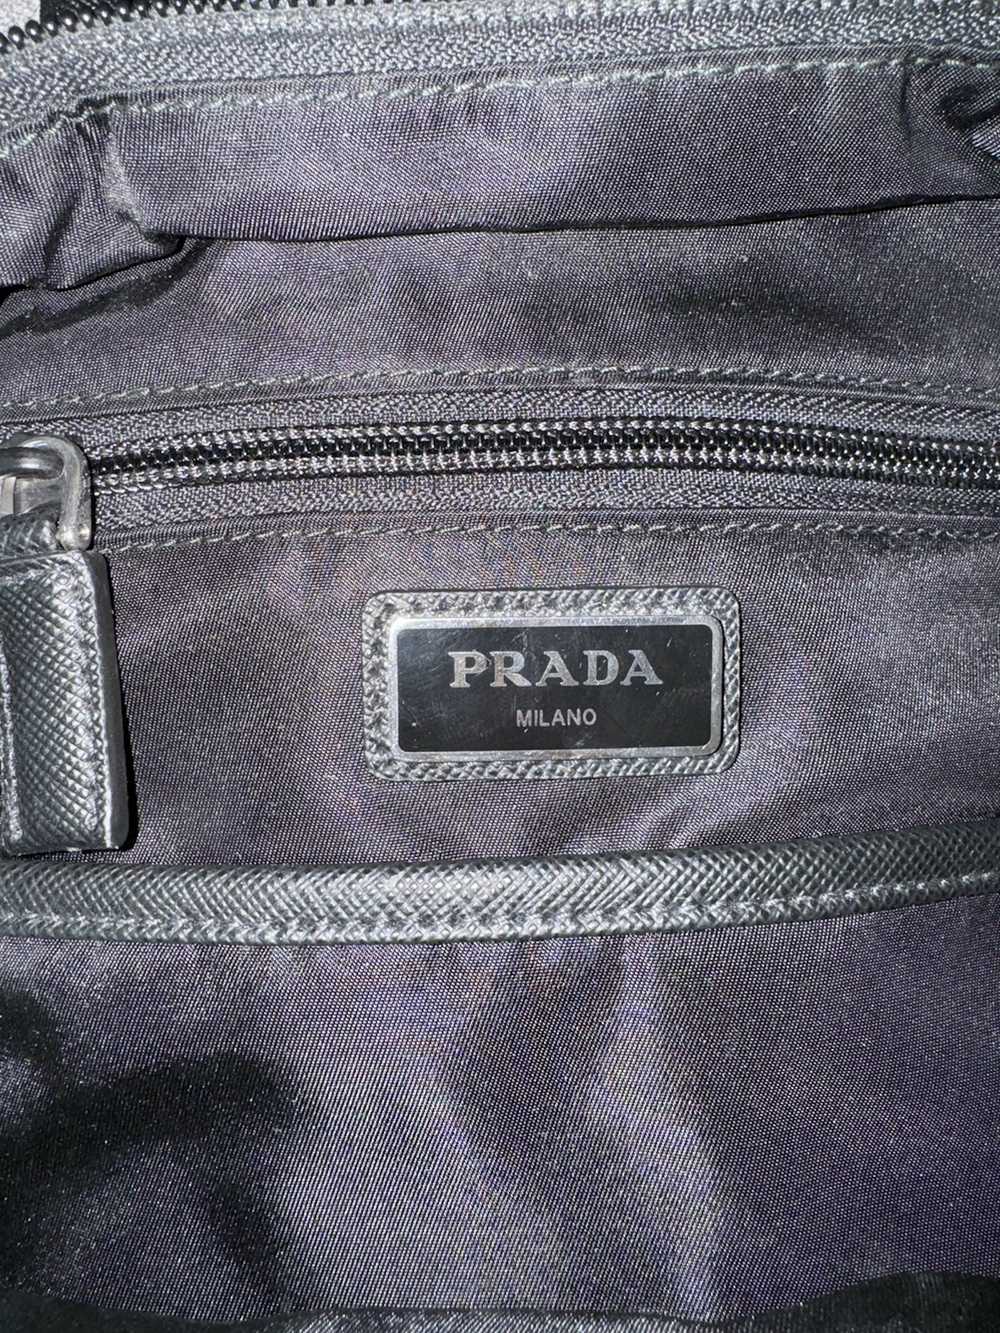 Prada Prada Dark Green Crossbody Nylon Bag - image 6